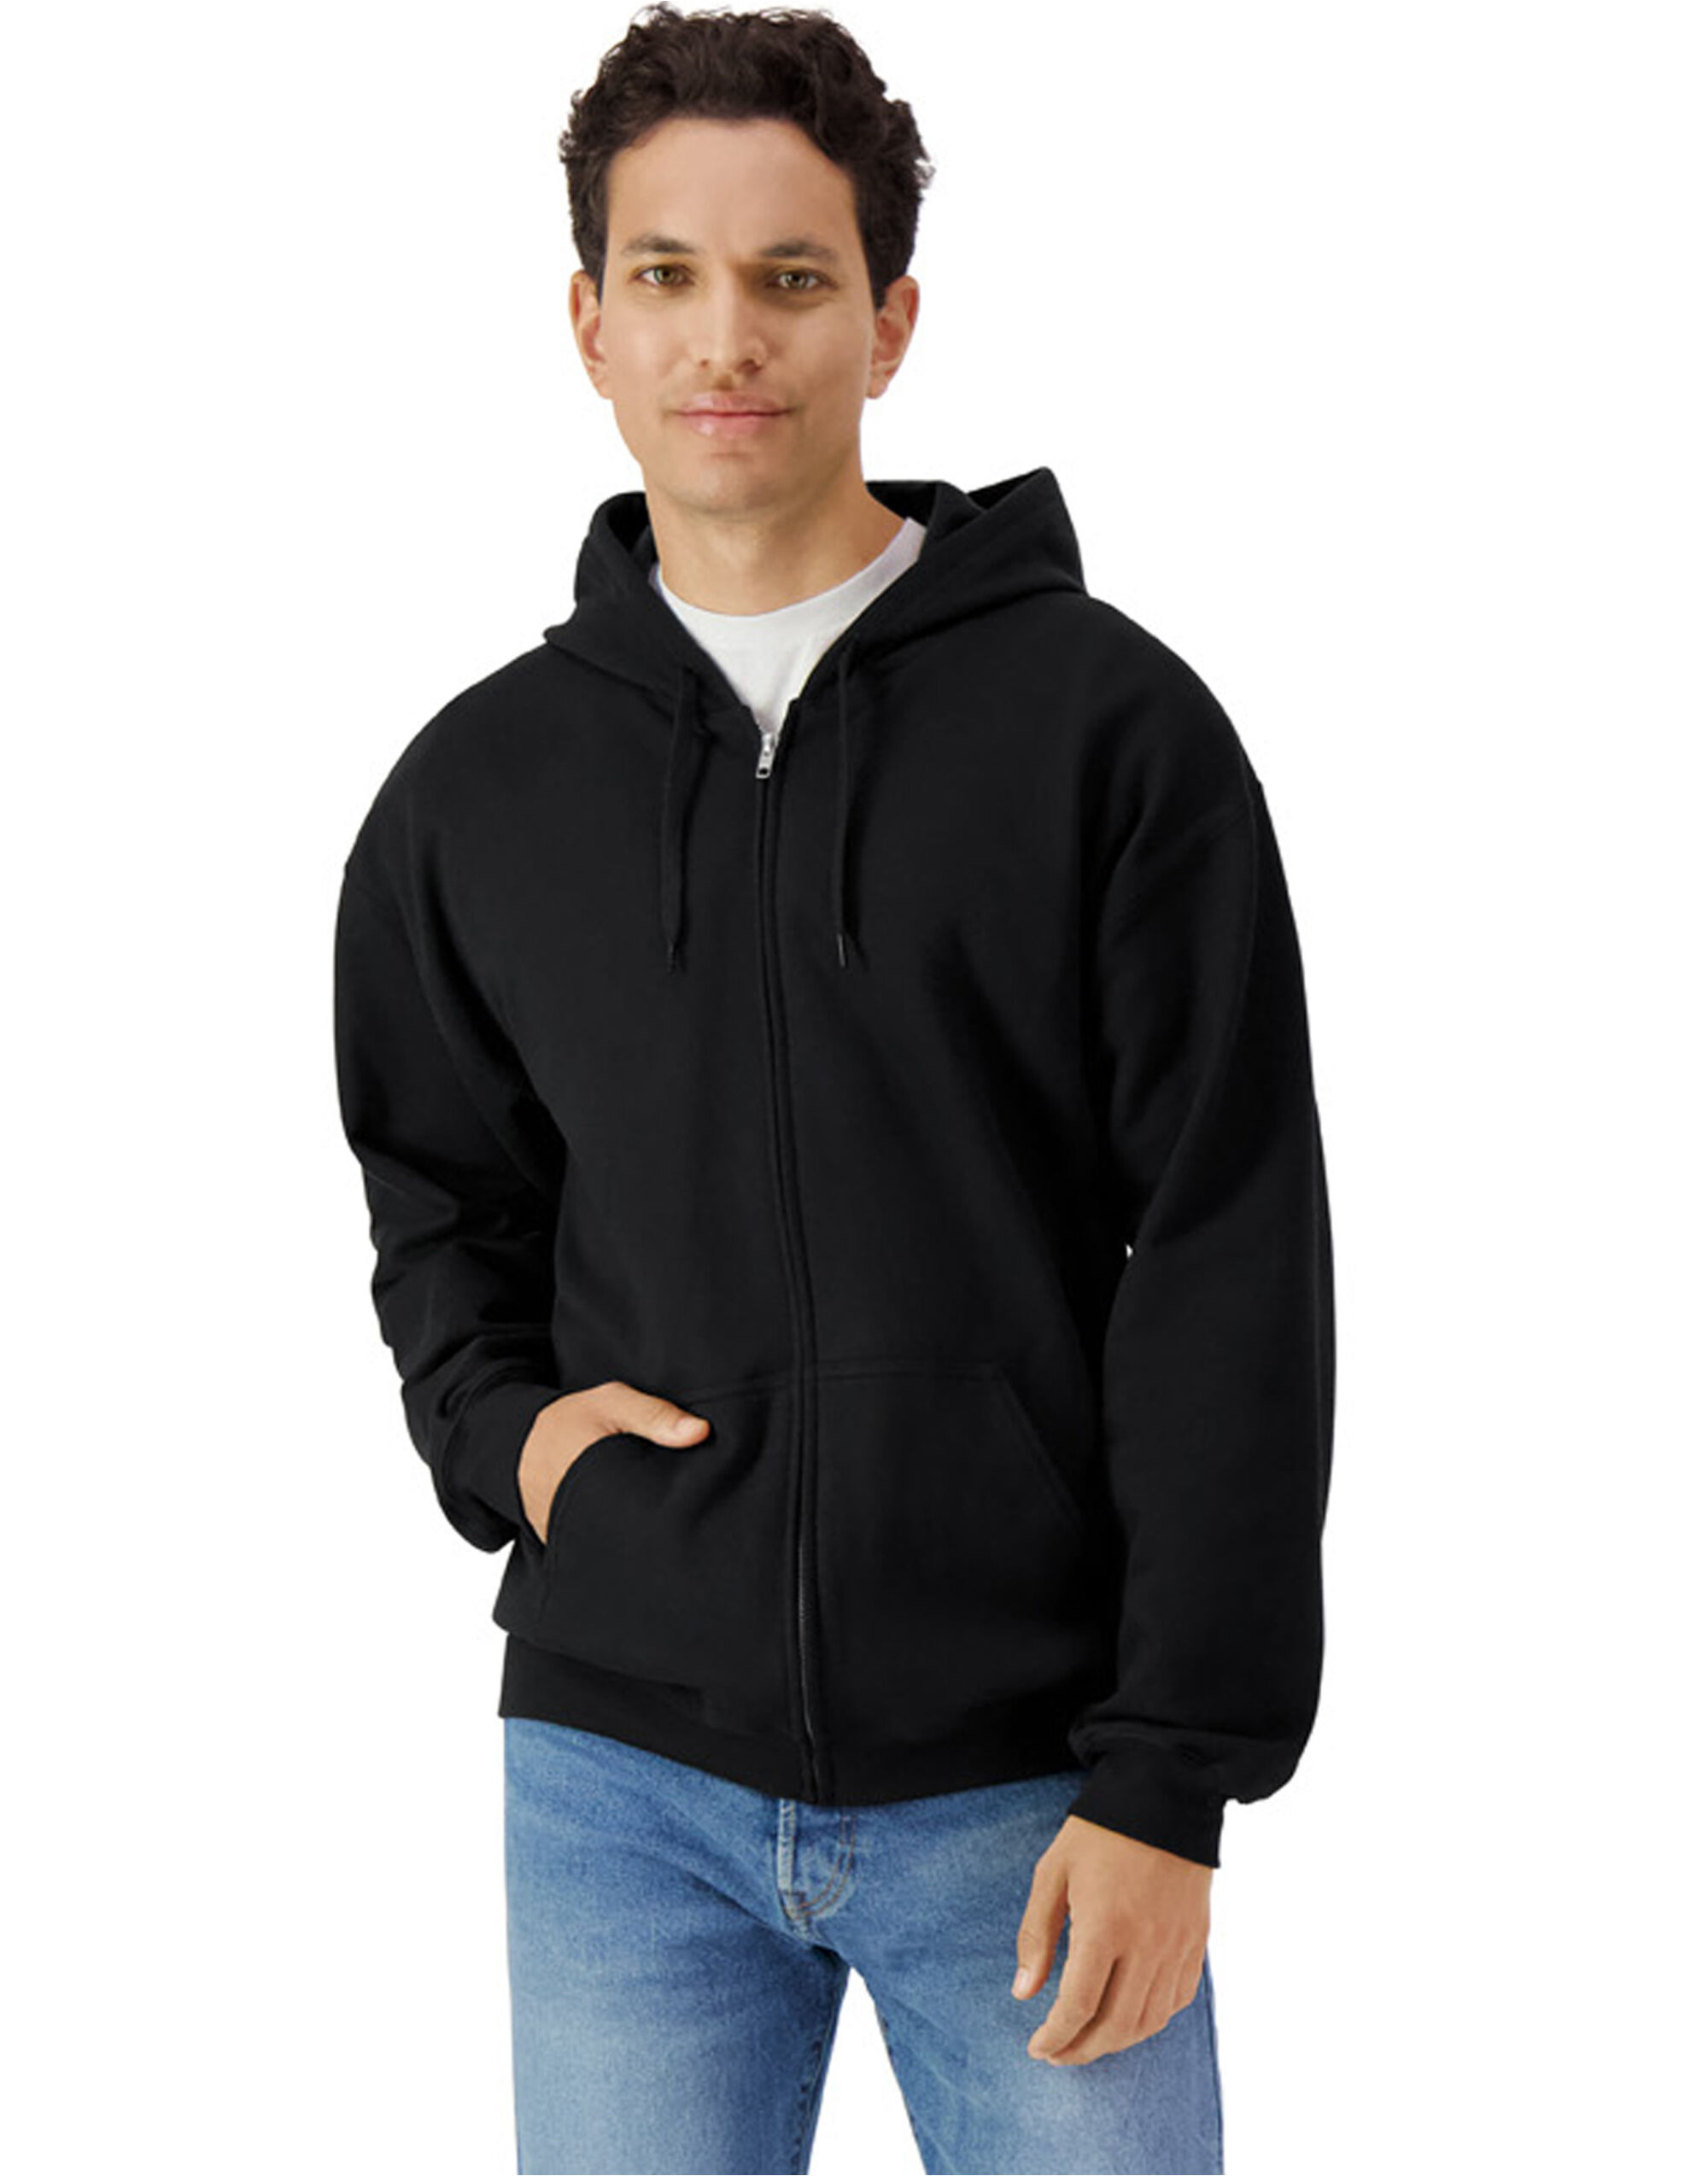 Softstyle Midweight Fleece Adult Full Zip Hooded Sweatshirt